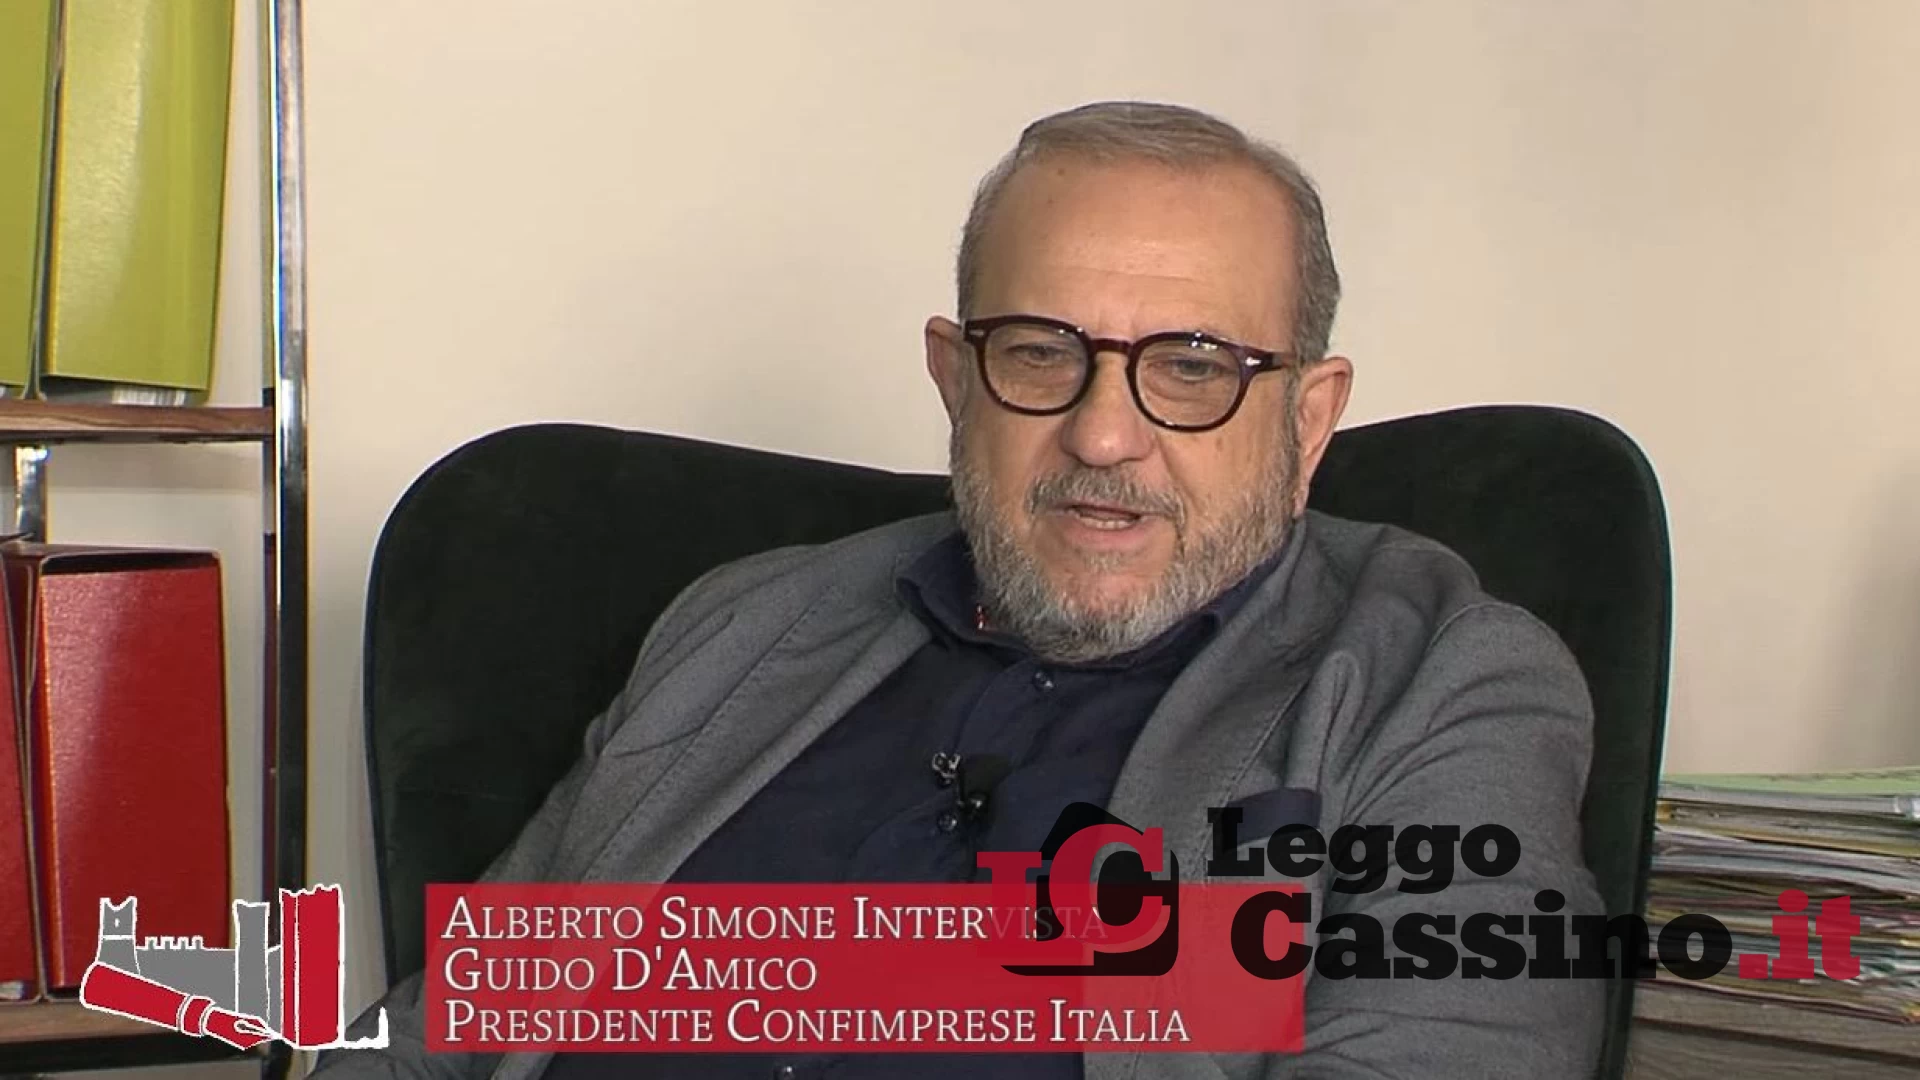 La sferzata di Guido D'Amico: "Oggi a Cassino mancano politici di spessore"